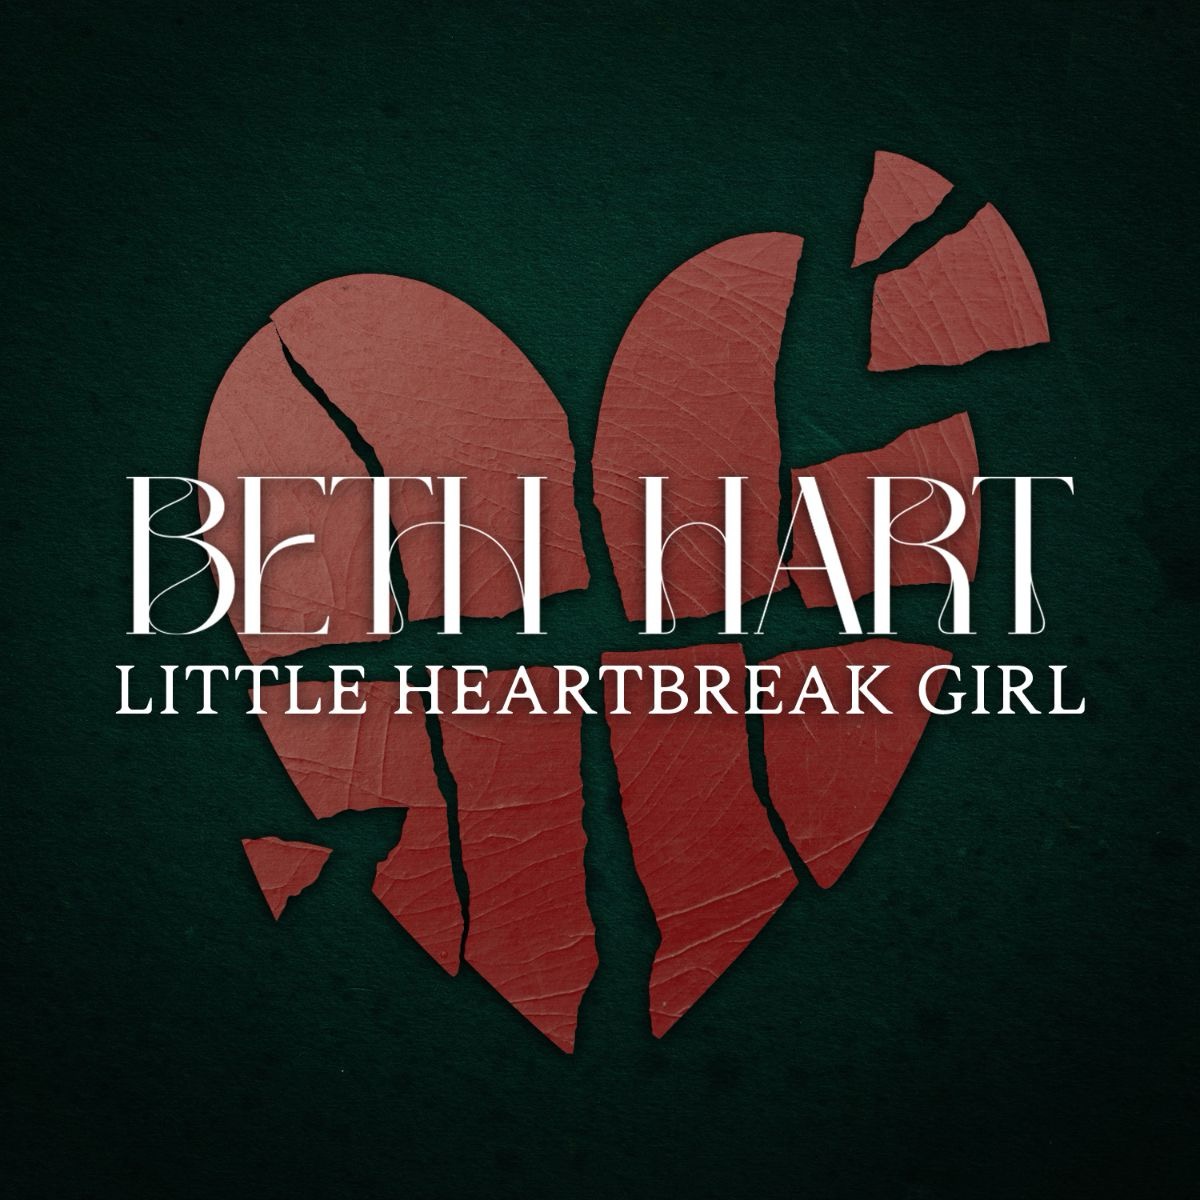 Beth Hart Shares New Single “Little Heartbreak Girl”